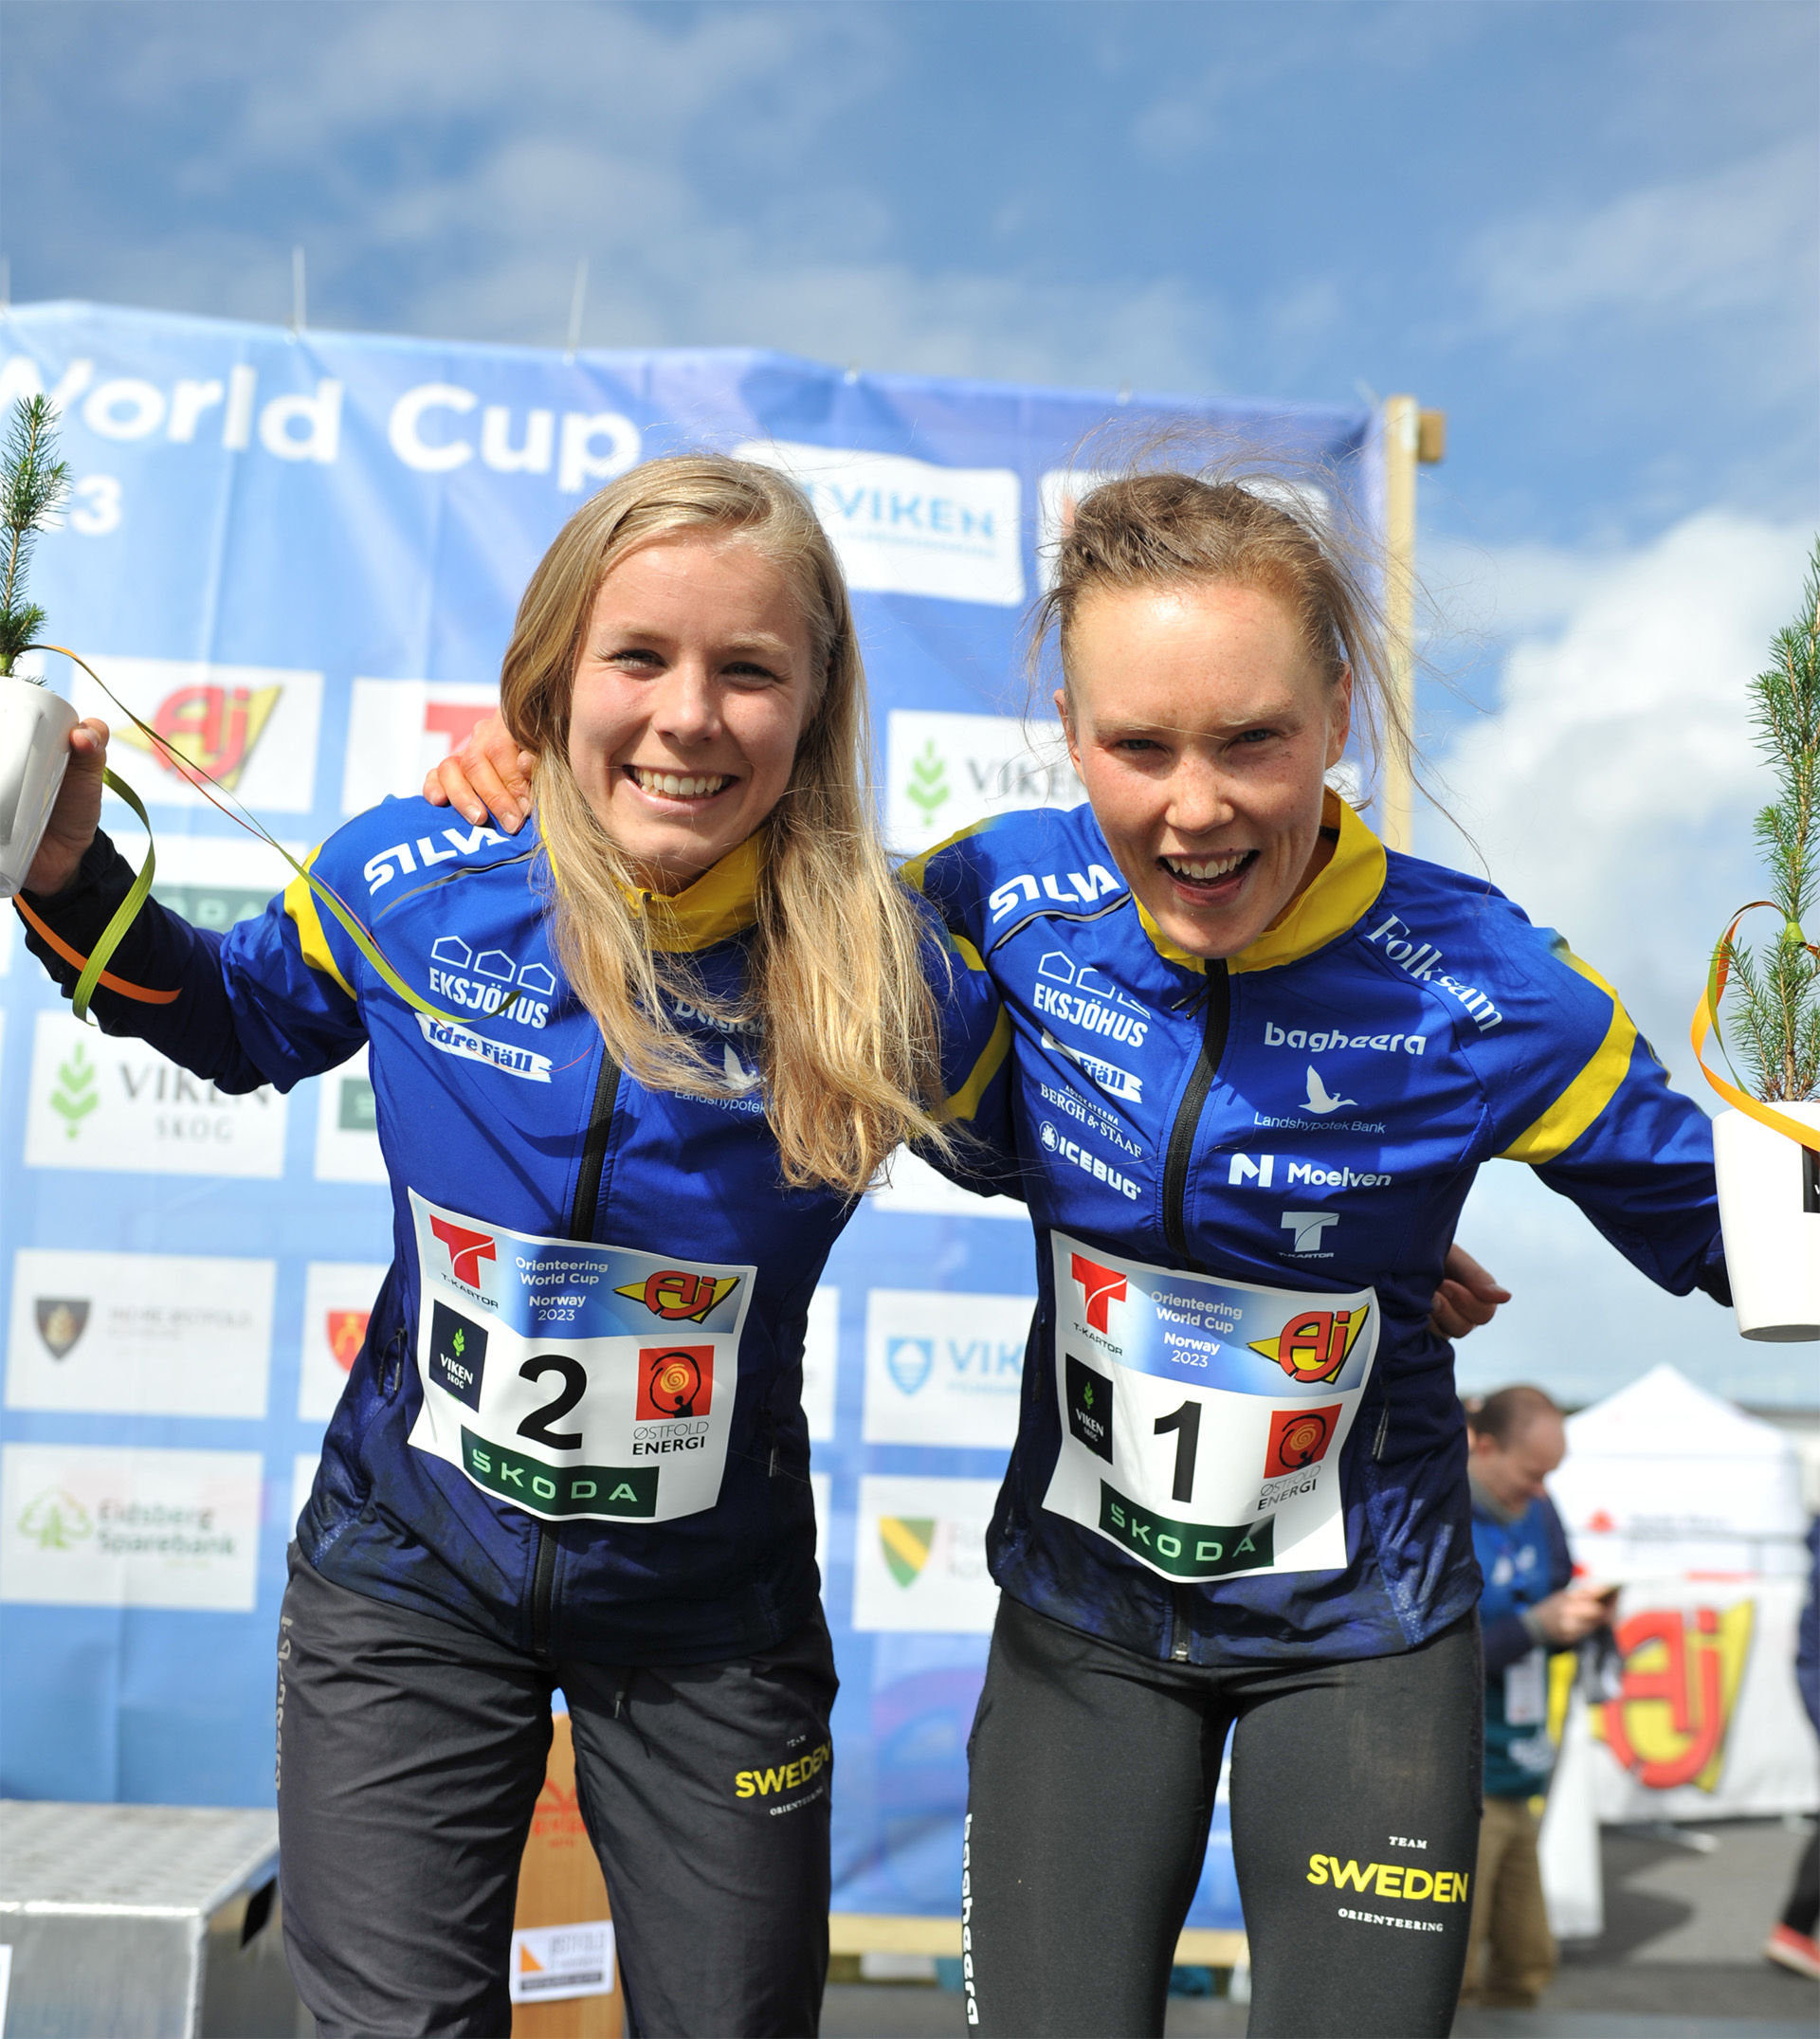 Sara Hagström och Tove Alexandersson efter dubbelseger på världscupen i Norge.